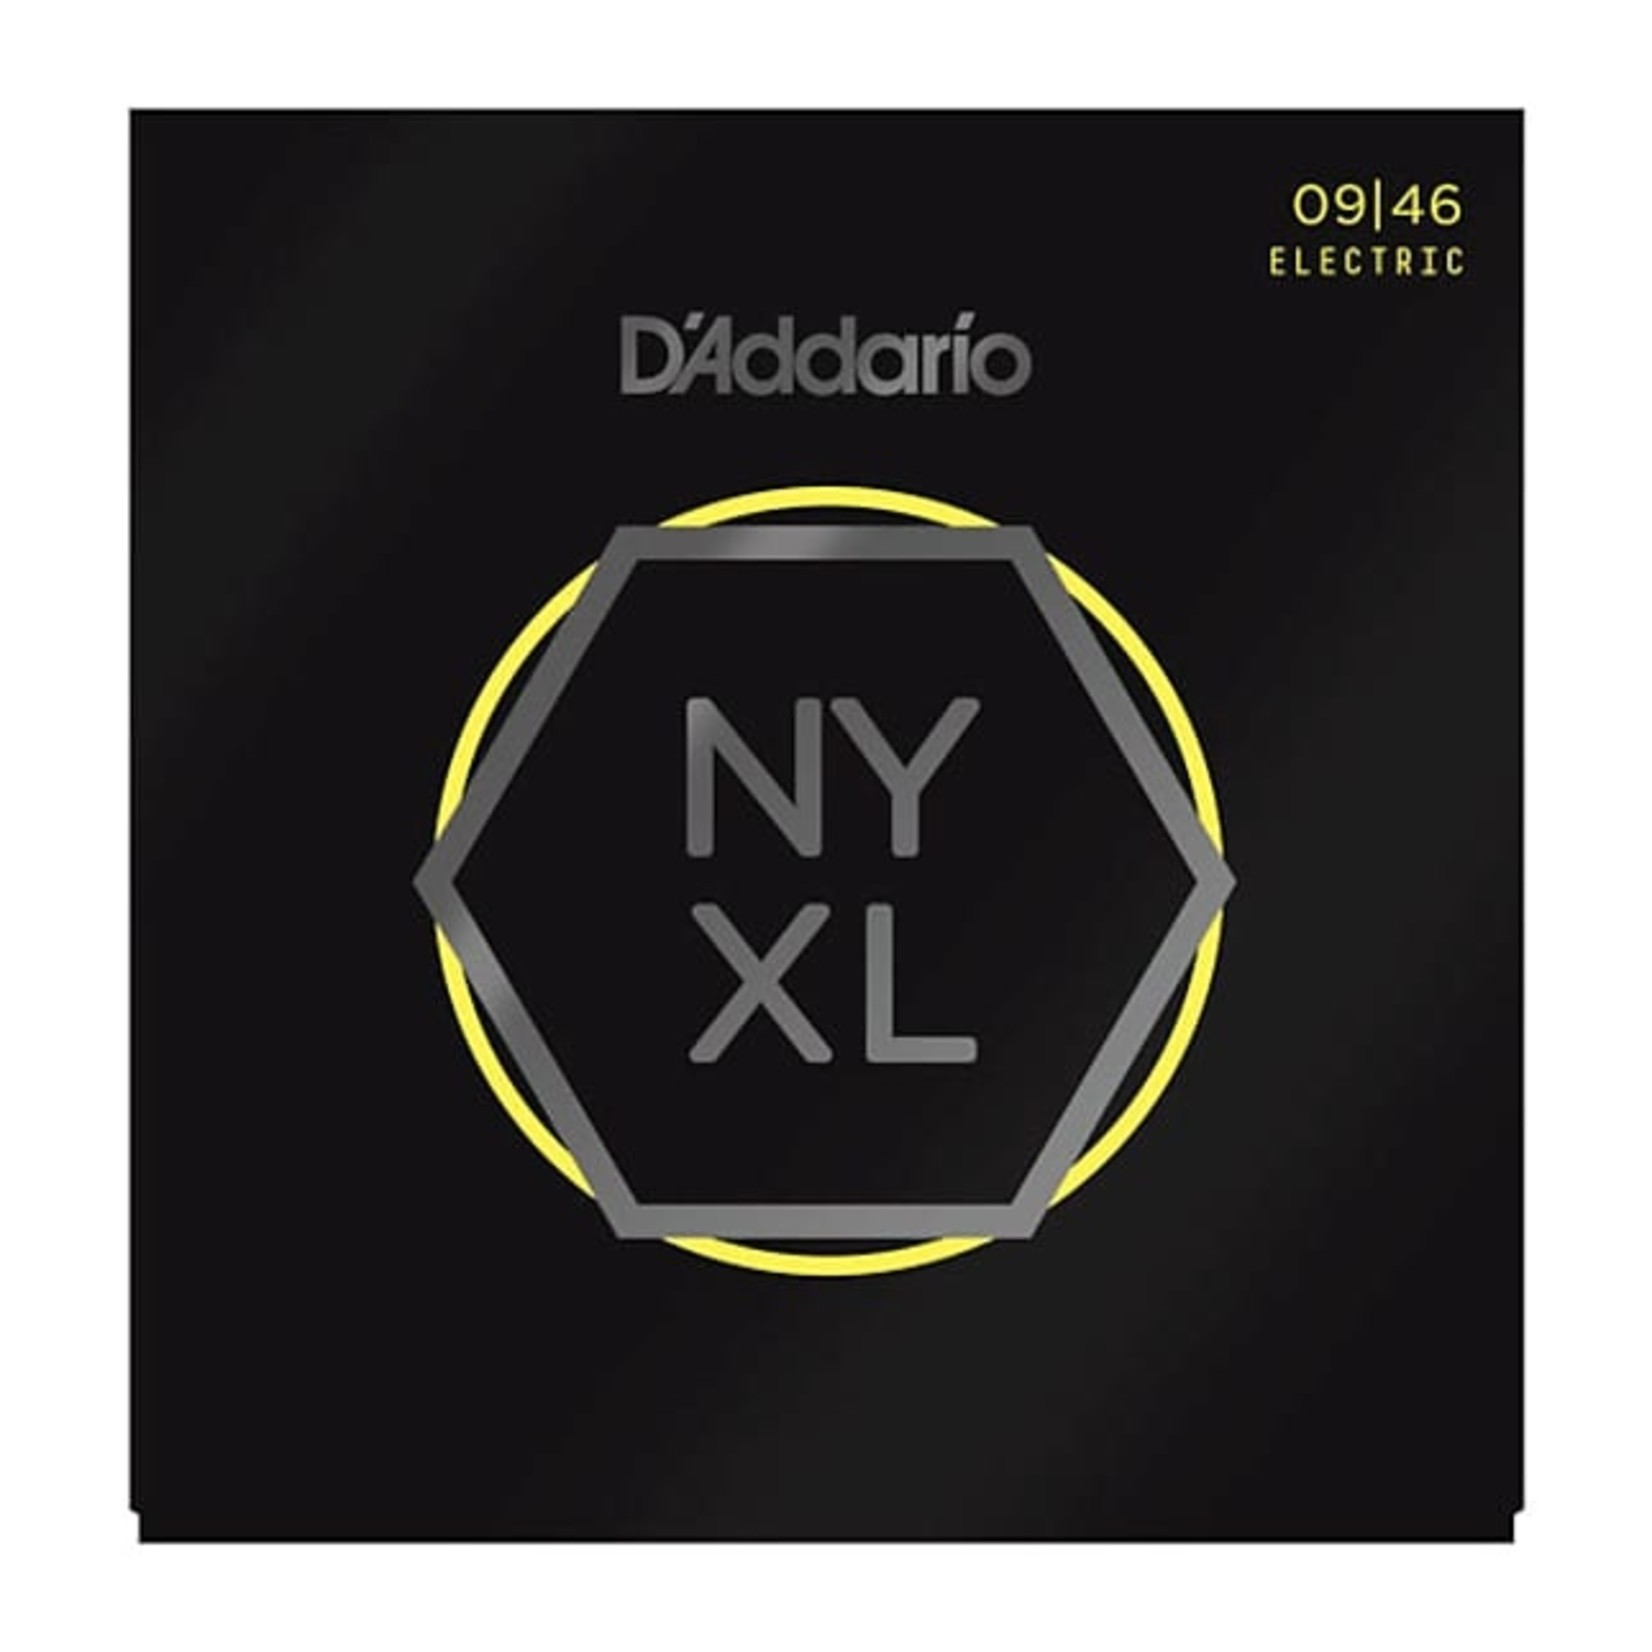 D'Addario D'Addario NYXL0946 9-46 Electric Guitar String Set